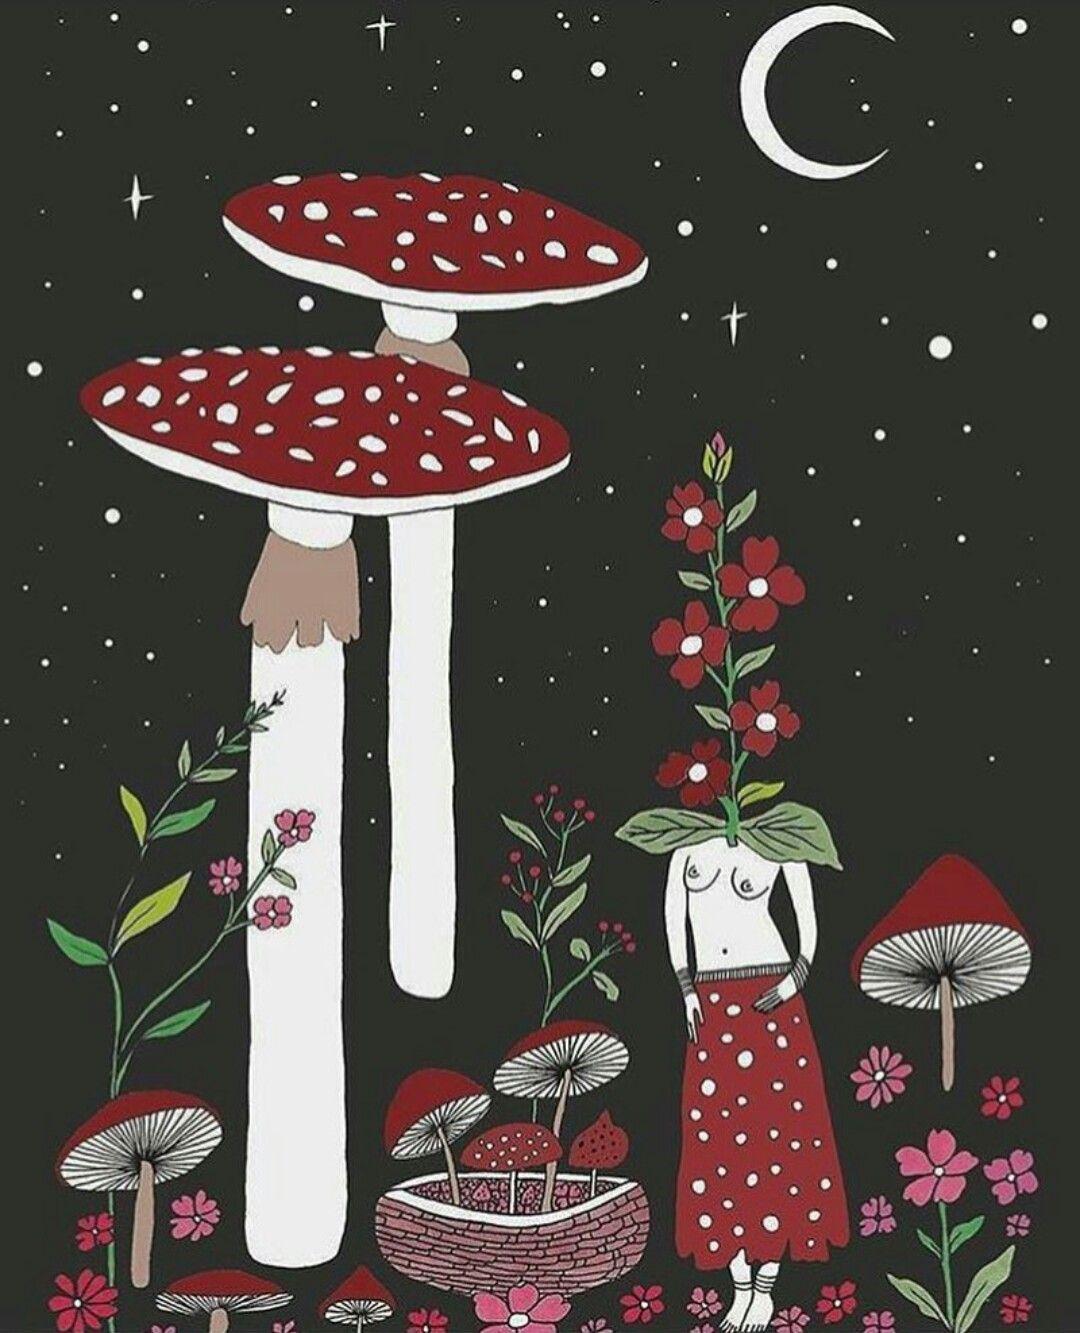 Mushroom Color Background Wallpaper Image For Free Download  Pngtree